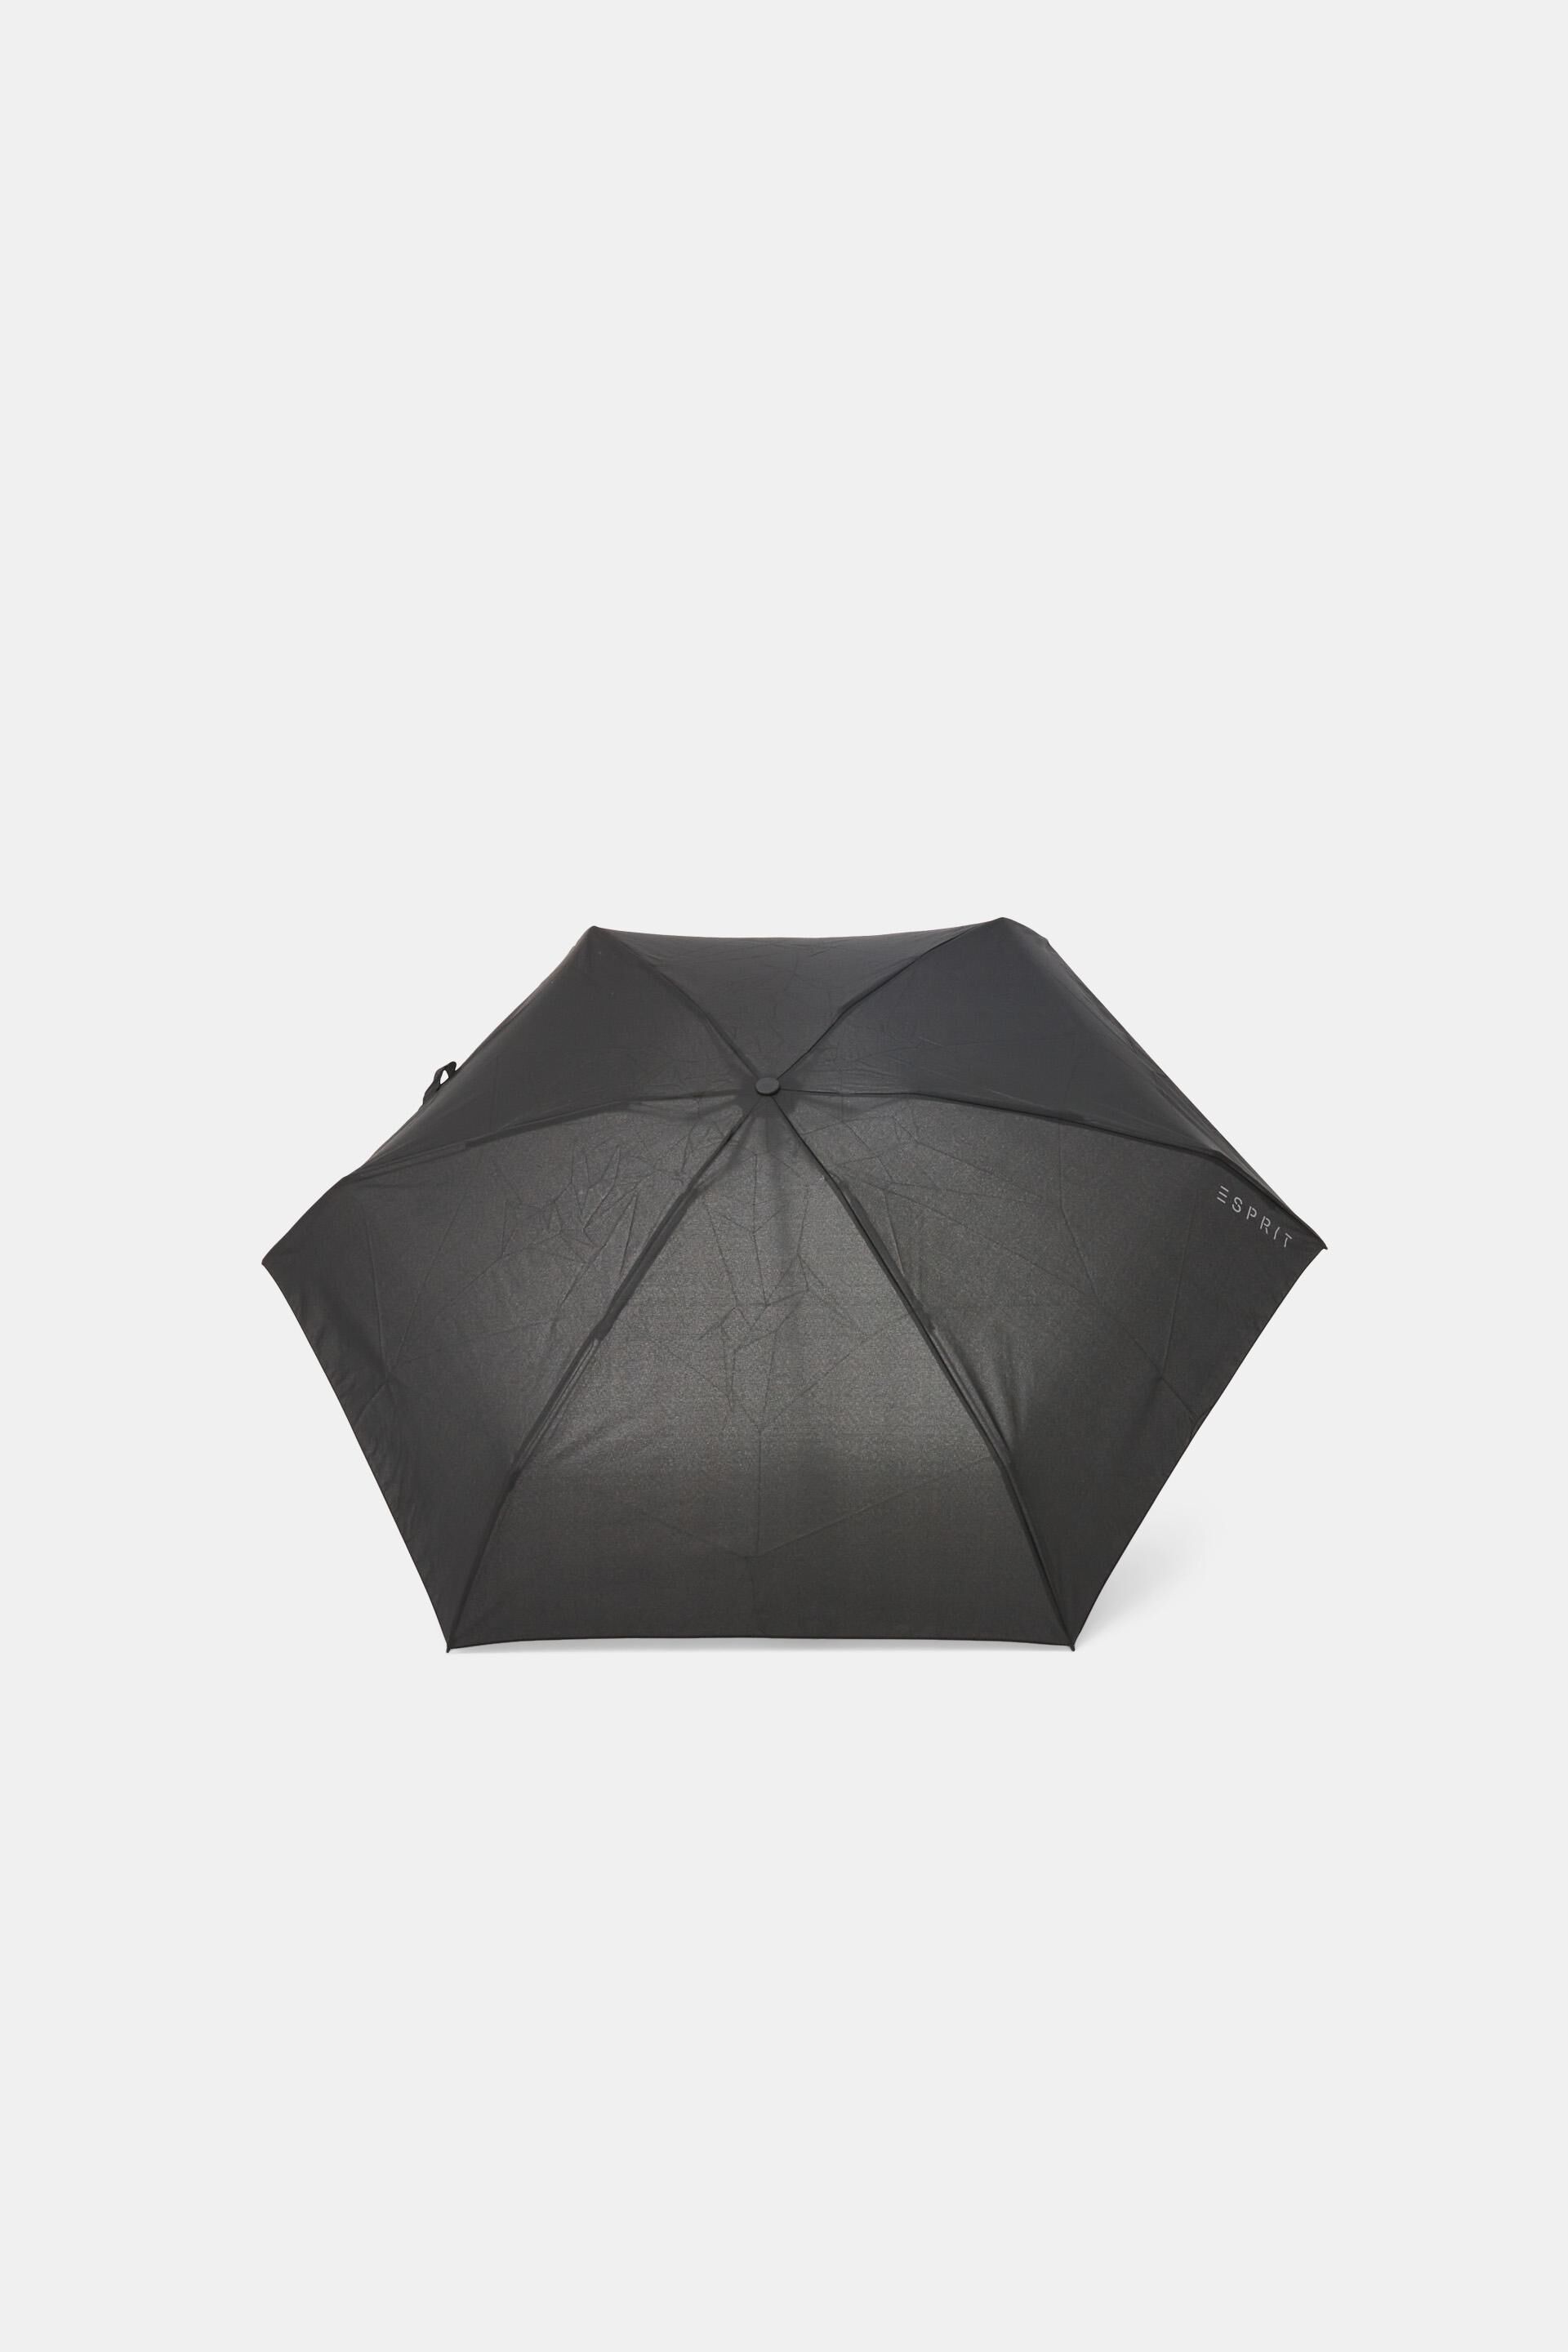 Esprit mini pocket Plain umbrella